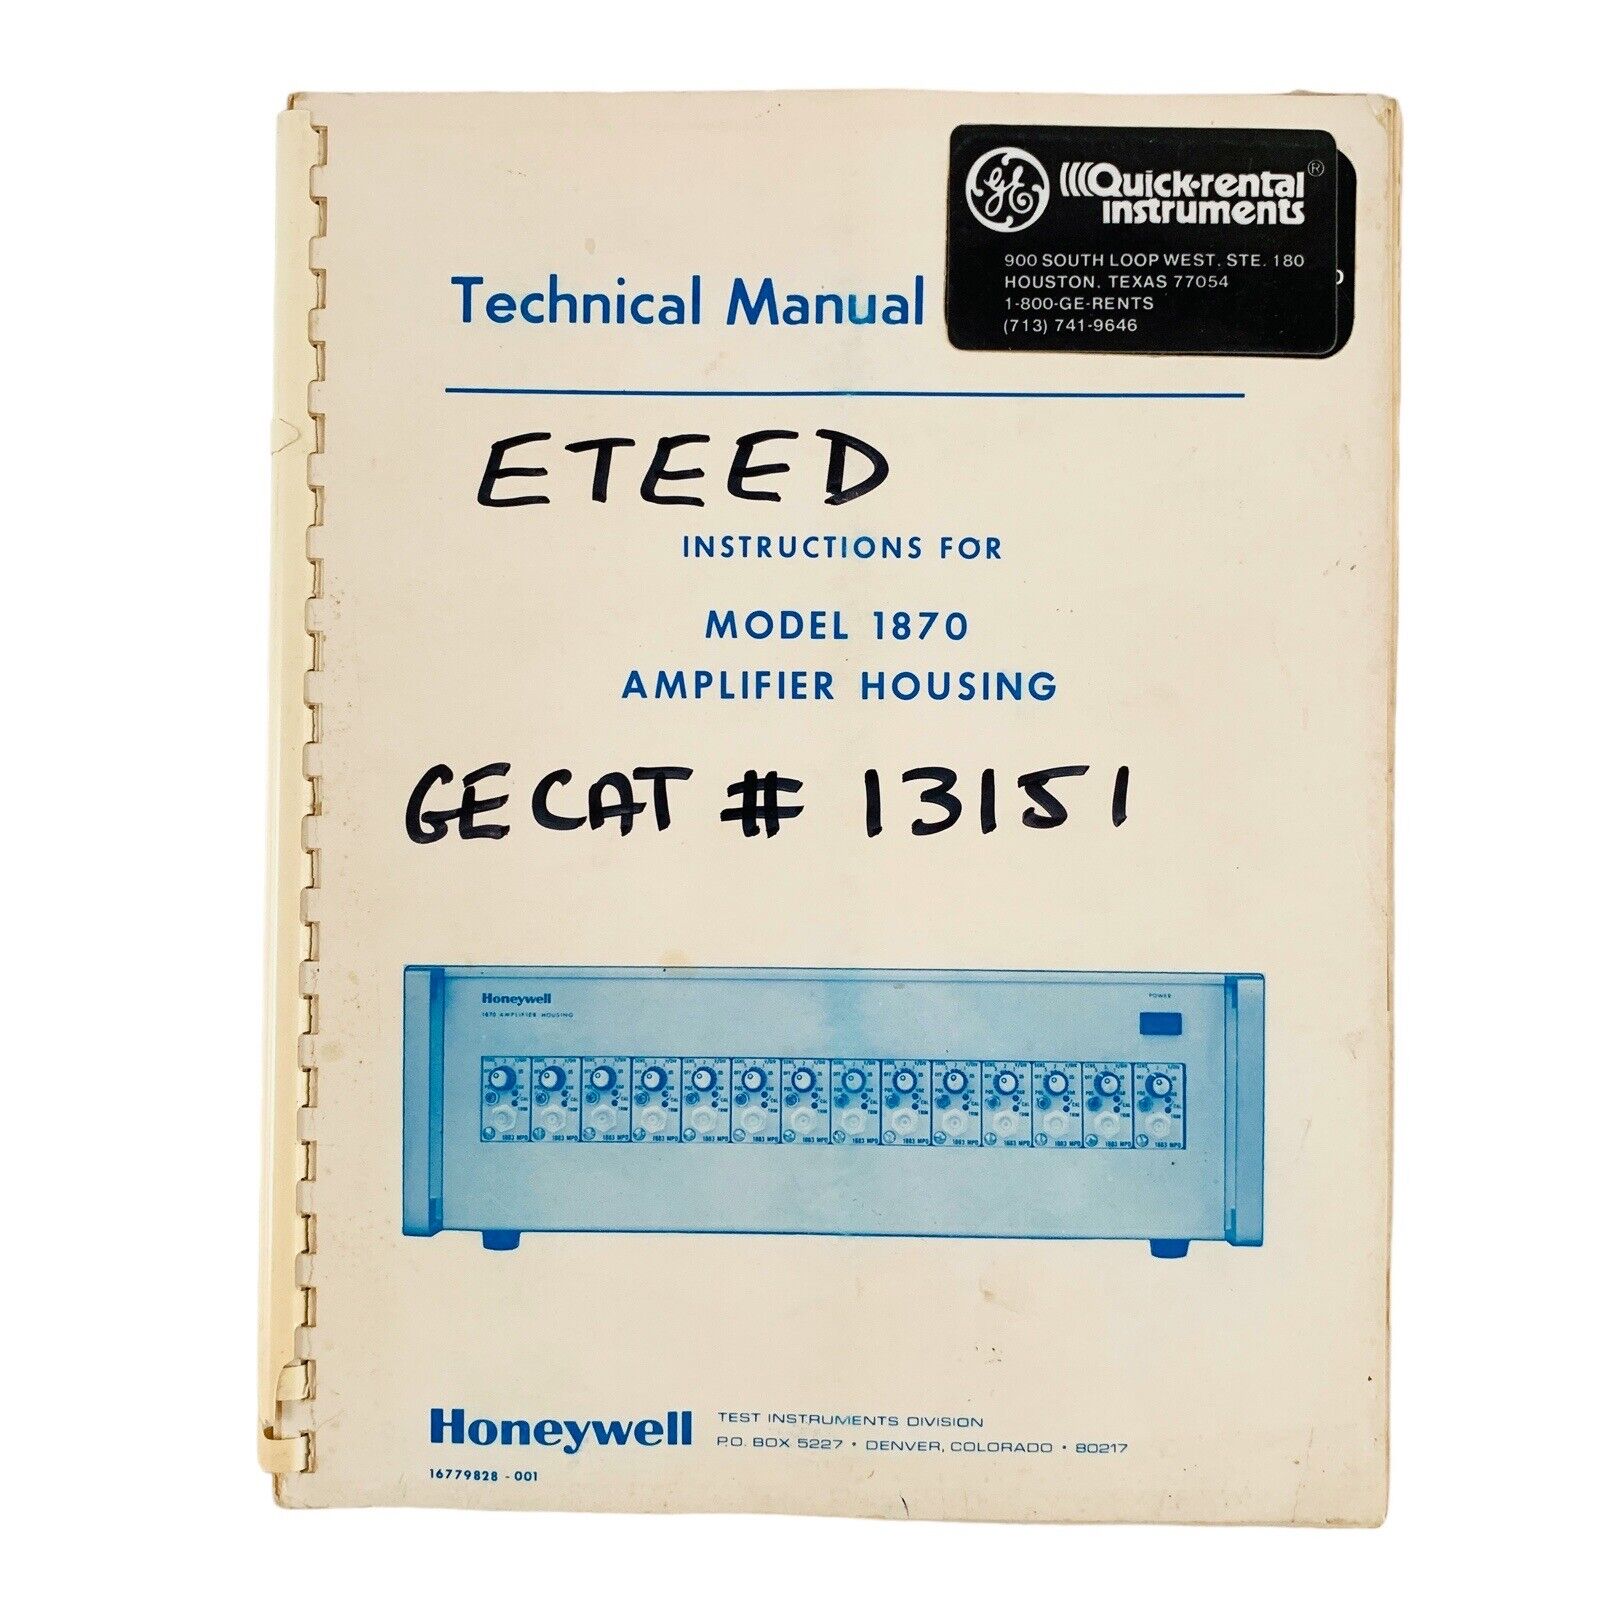 VTG 1977 Honeywell Model 1870 Technical Manual for Amplifier Housing